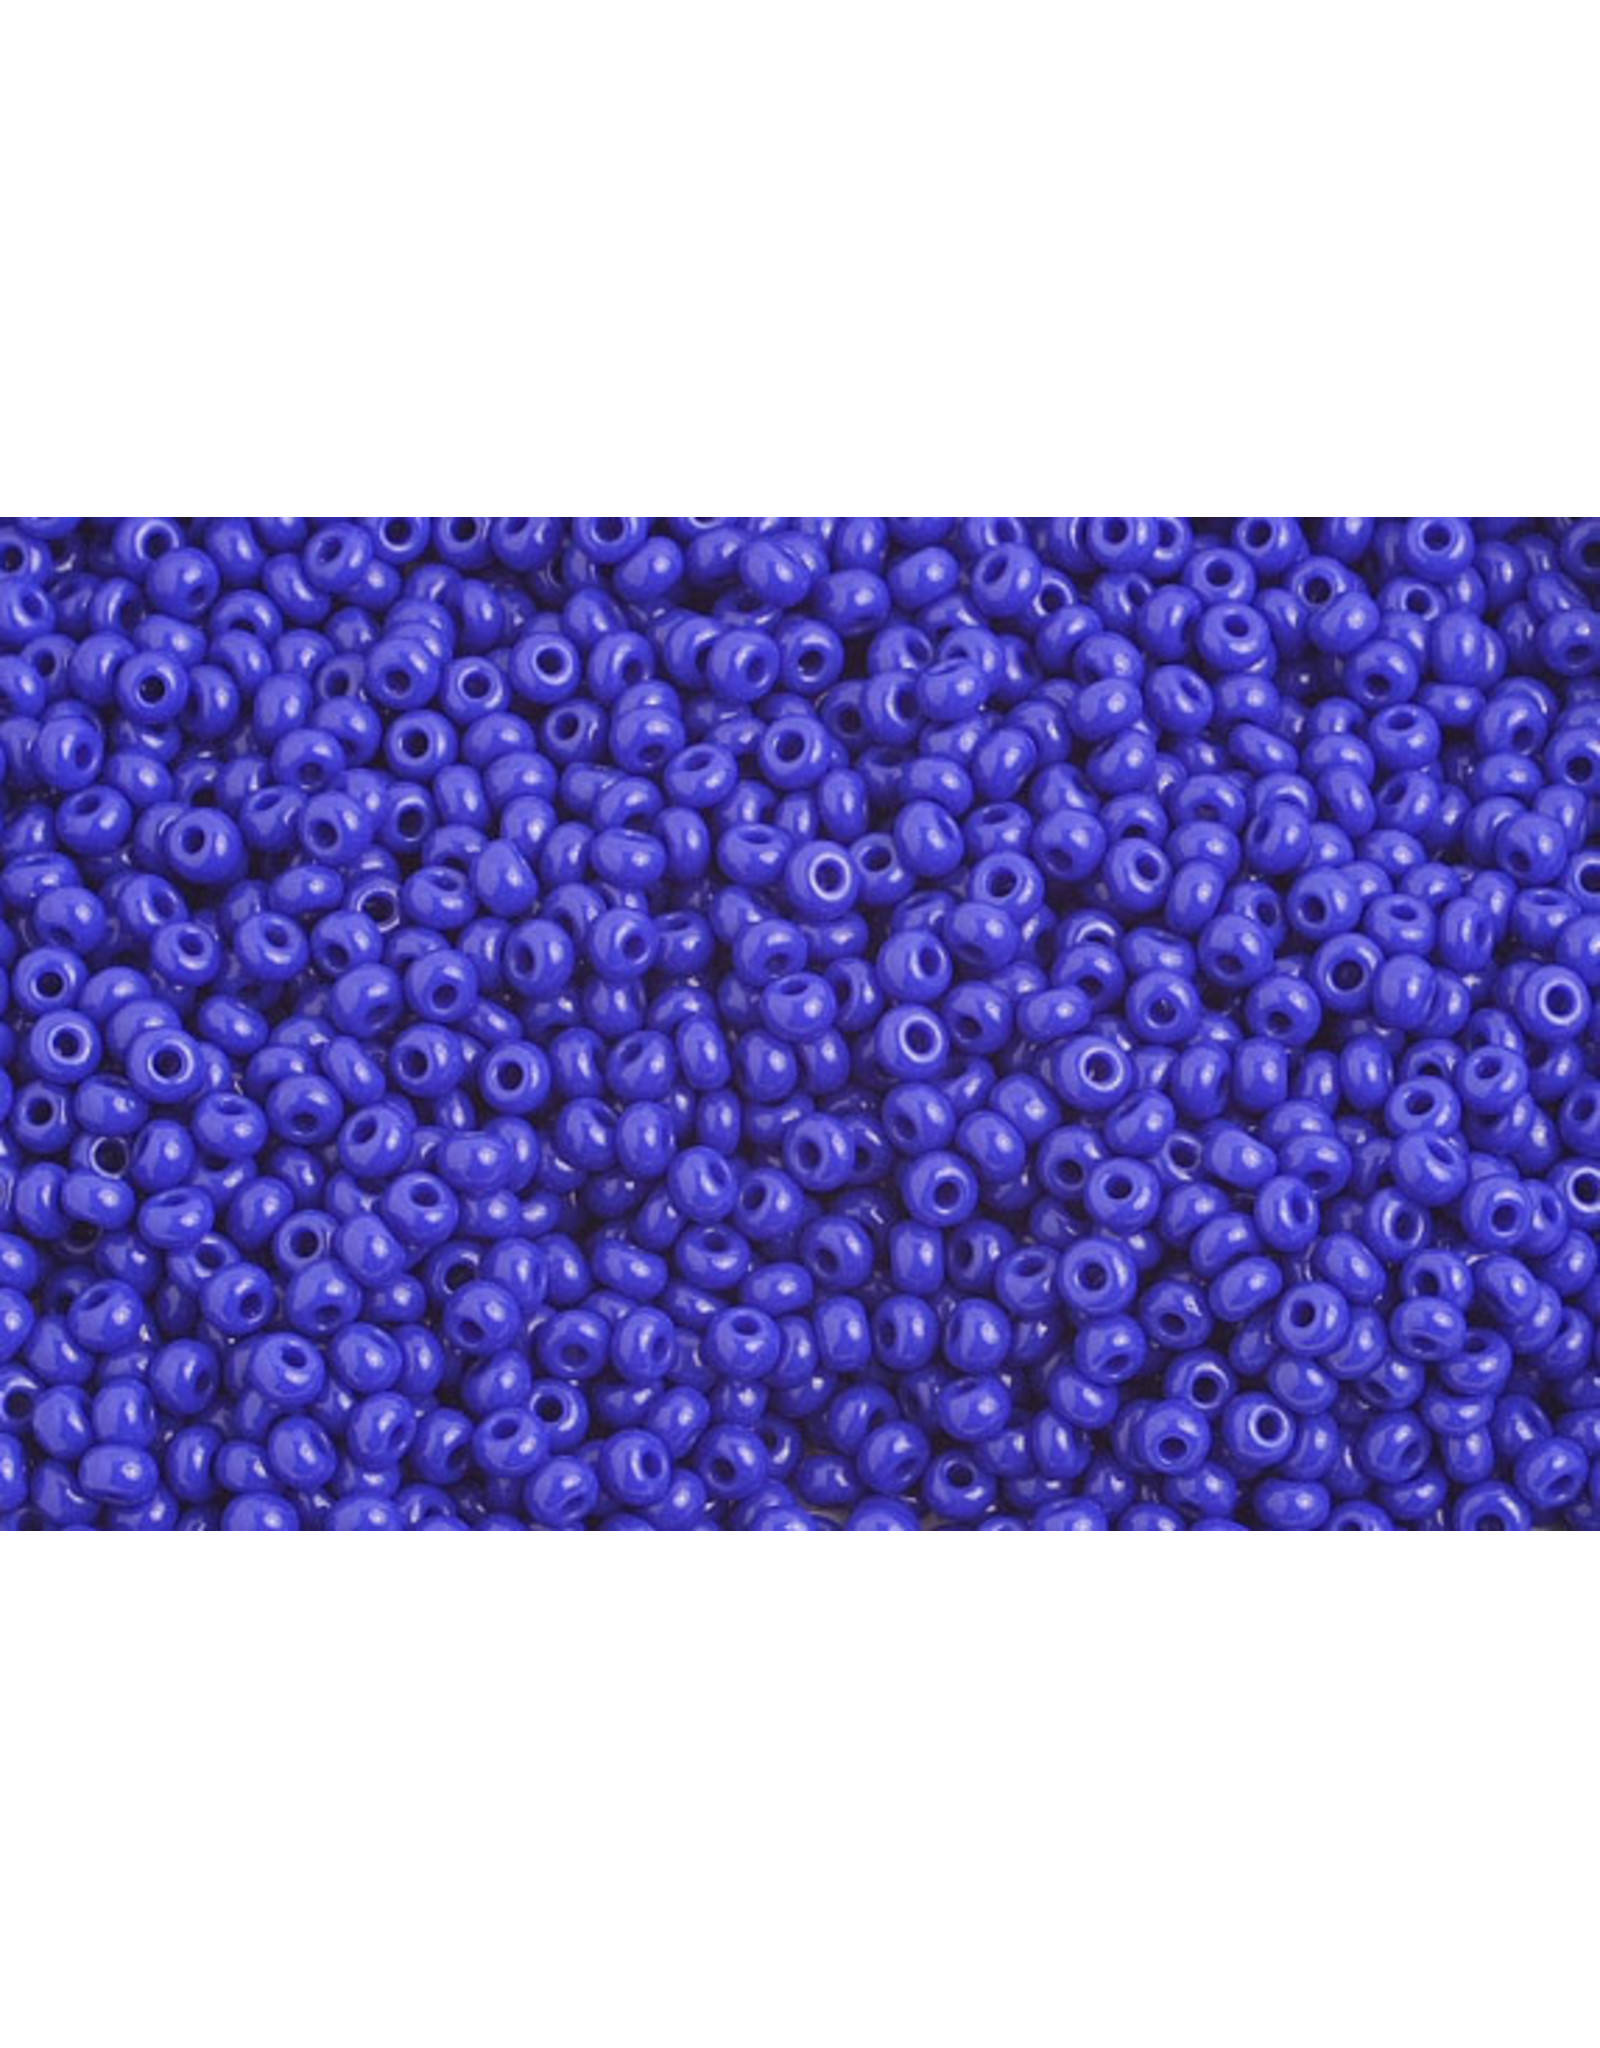 Czech 1044B 10  Seed 125g Opaque Royal Blue